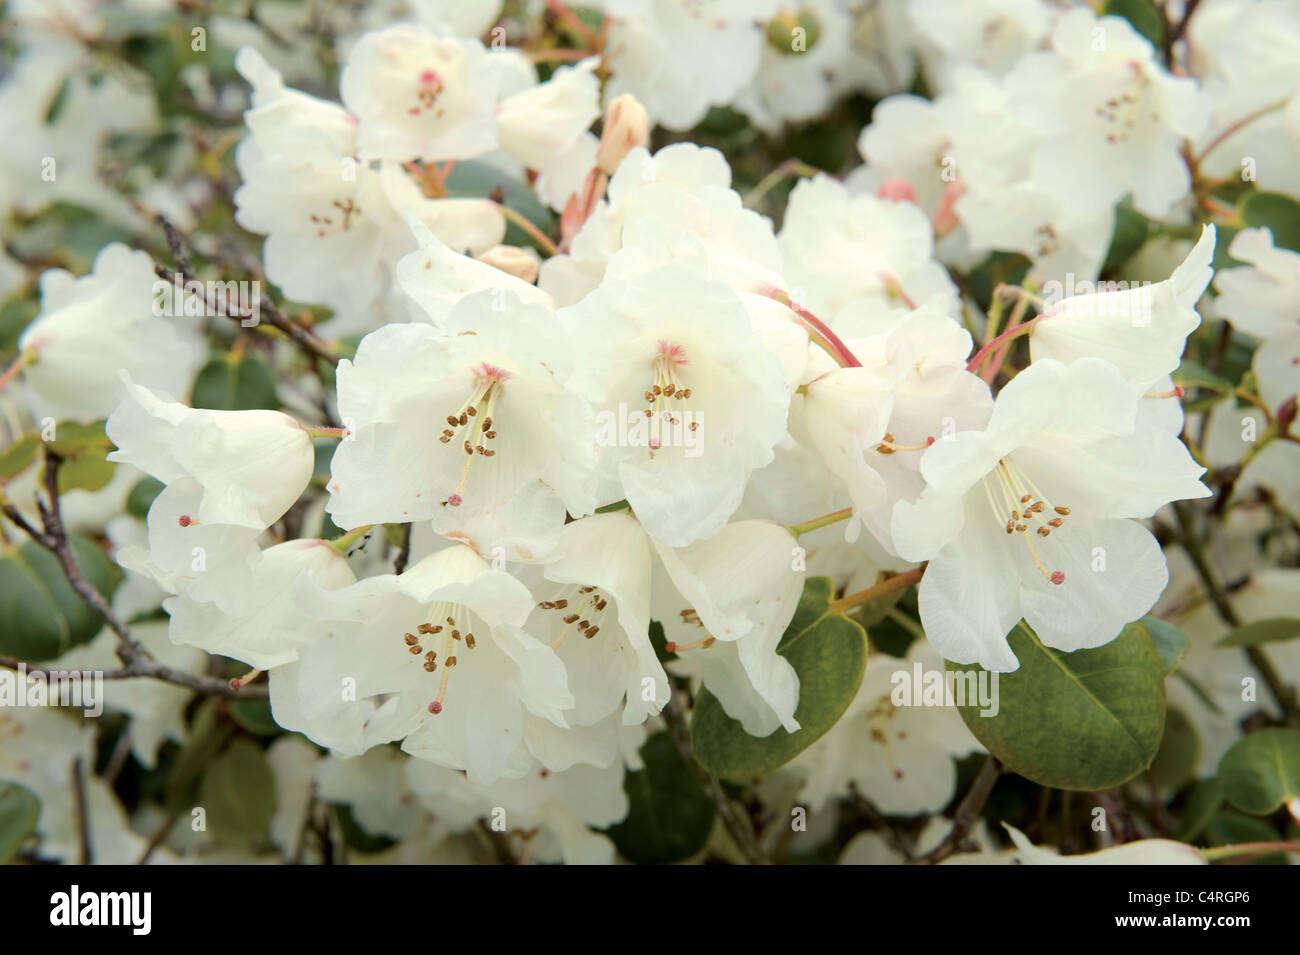 Les belles fleurs blanches en forme de cloche d'un des nombreux rhododendrons du jardin. Banque D'Images